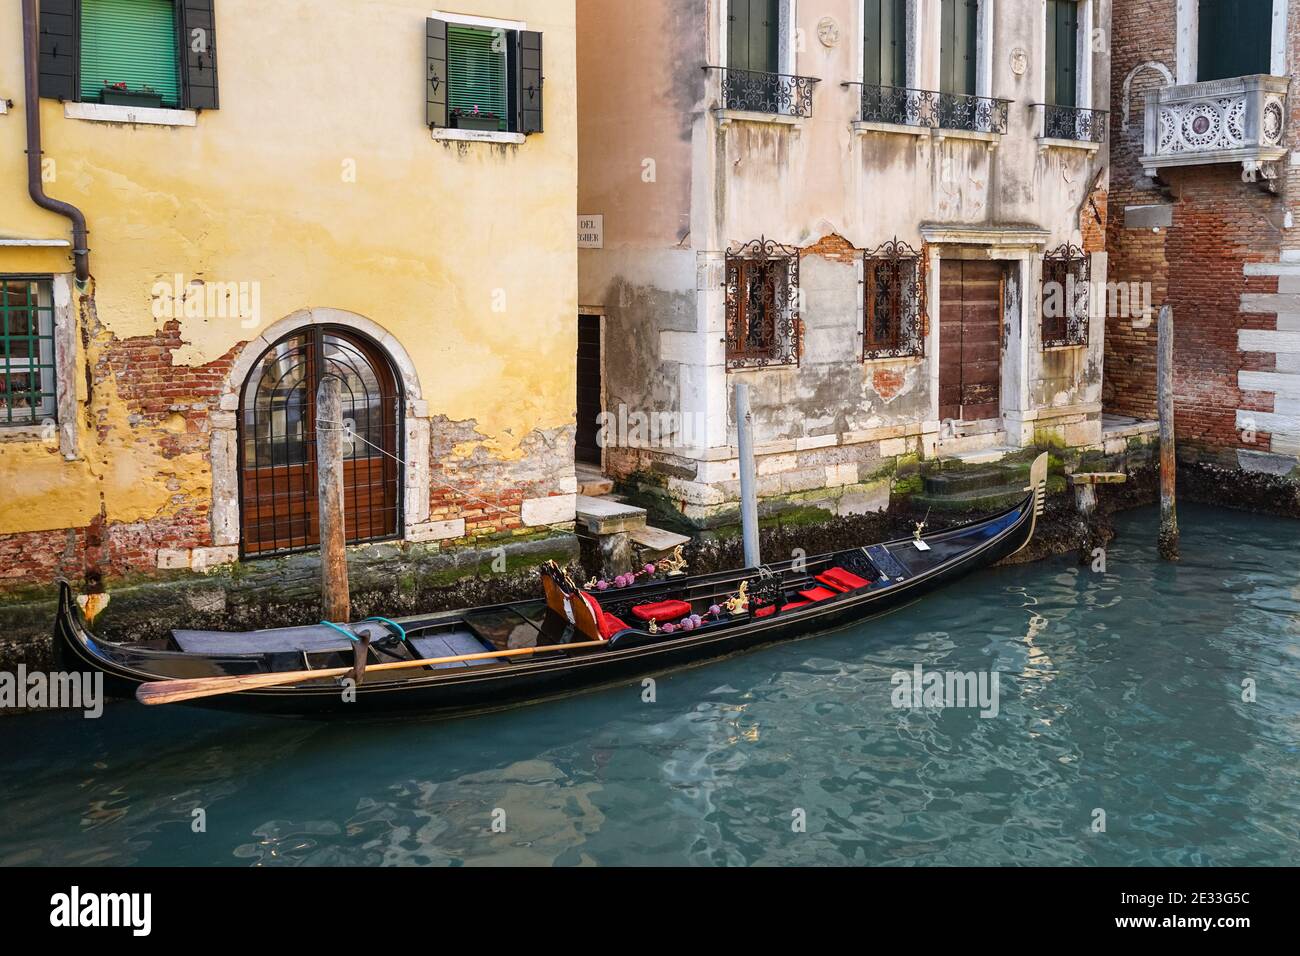 Gondole vénitienne traditionnelle sur le canal à Venise, Italie Banque D'Images